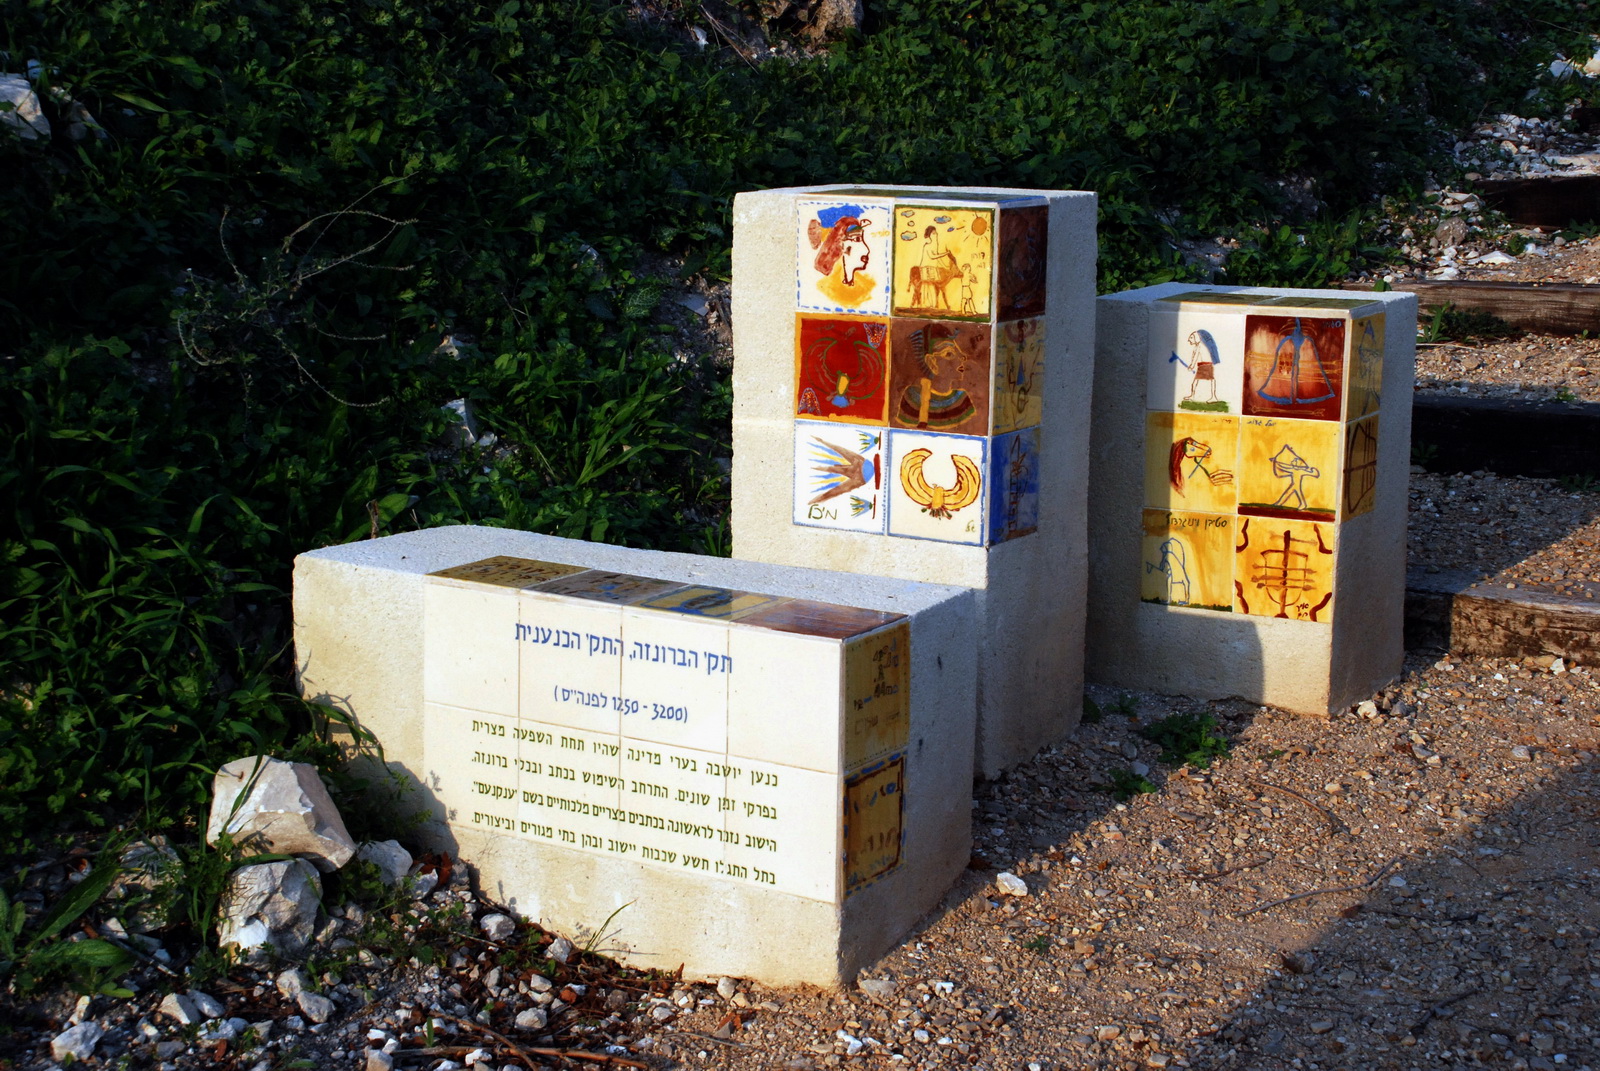 תל יקנעם -  דוגמא לציון תקופות התל - התקופה הקדומה ביותר - תק' הברונזה